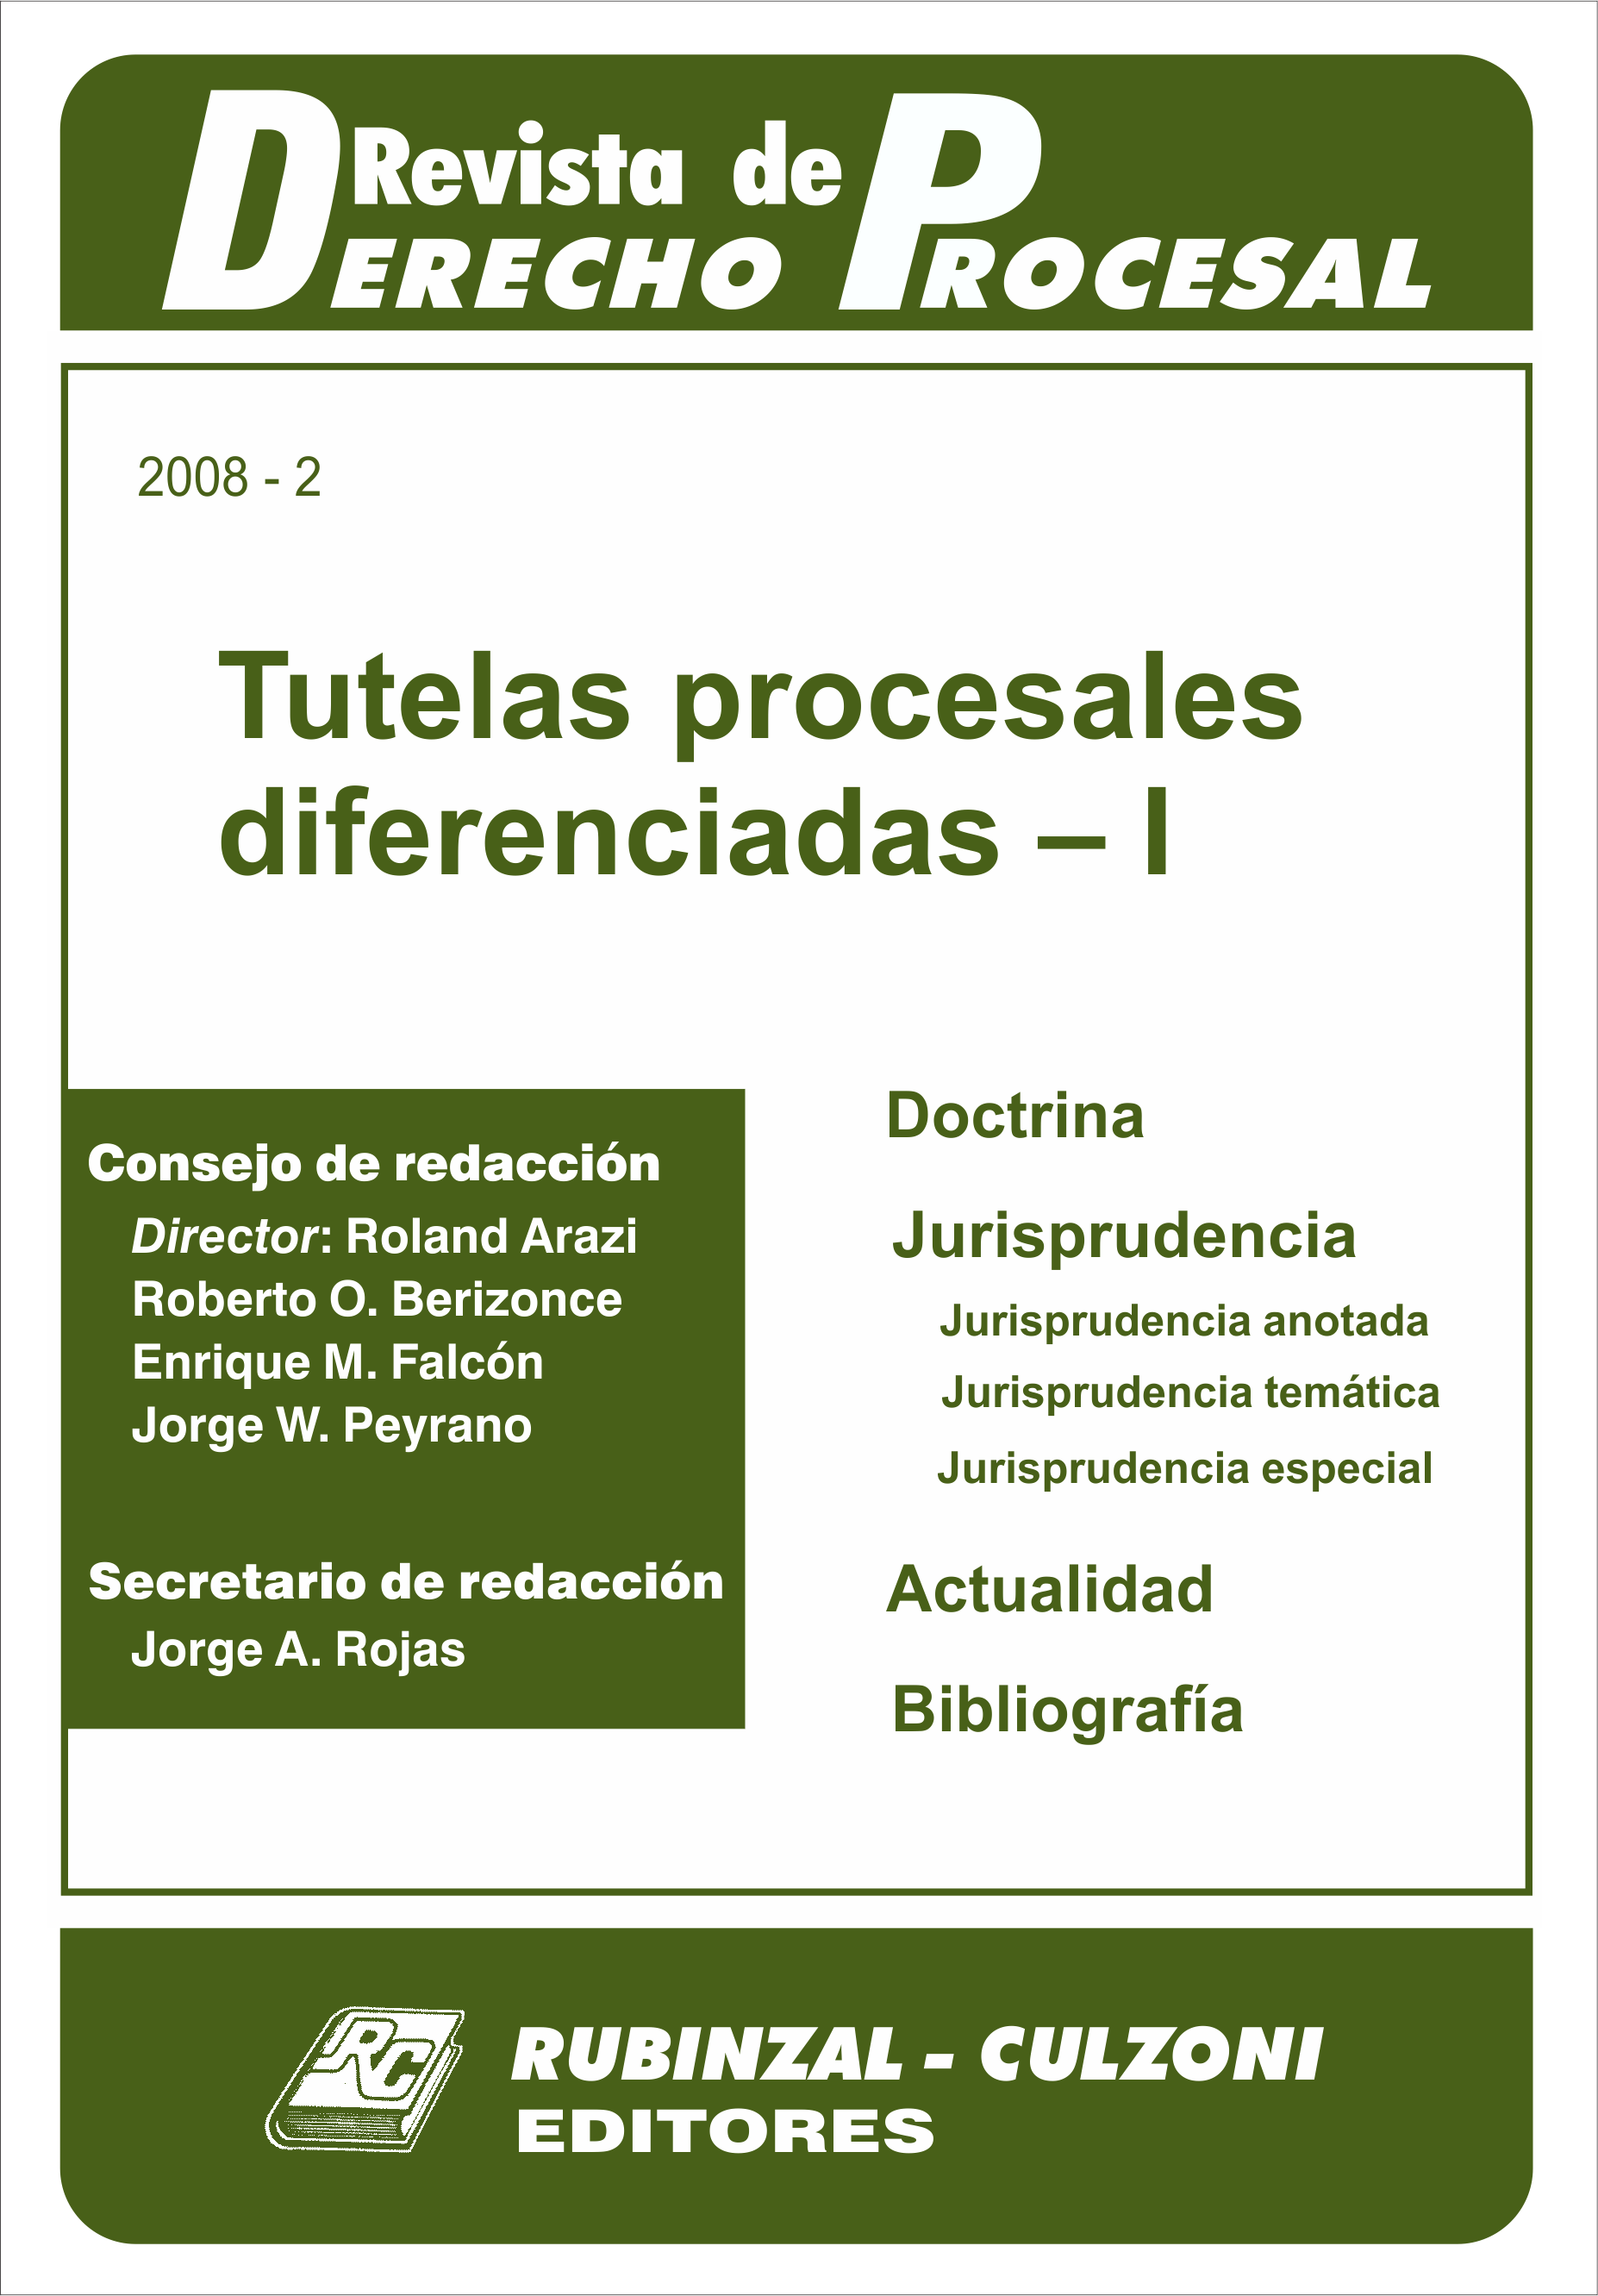 Revista de Derecho Procesal - Tutelas procesales diferenciadas - I